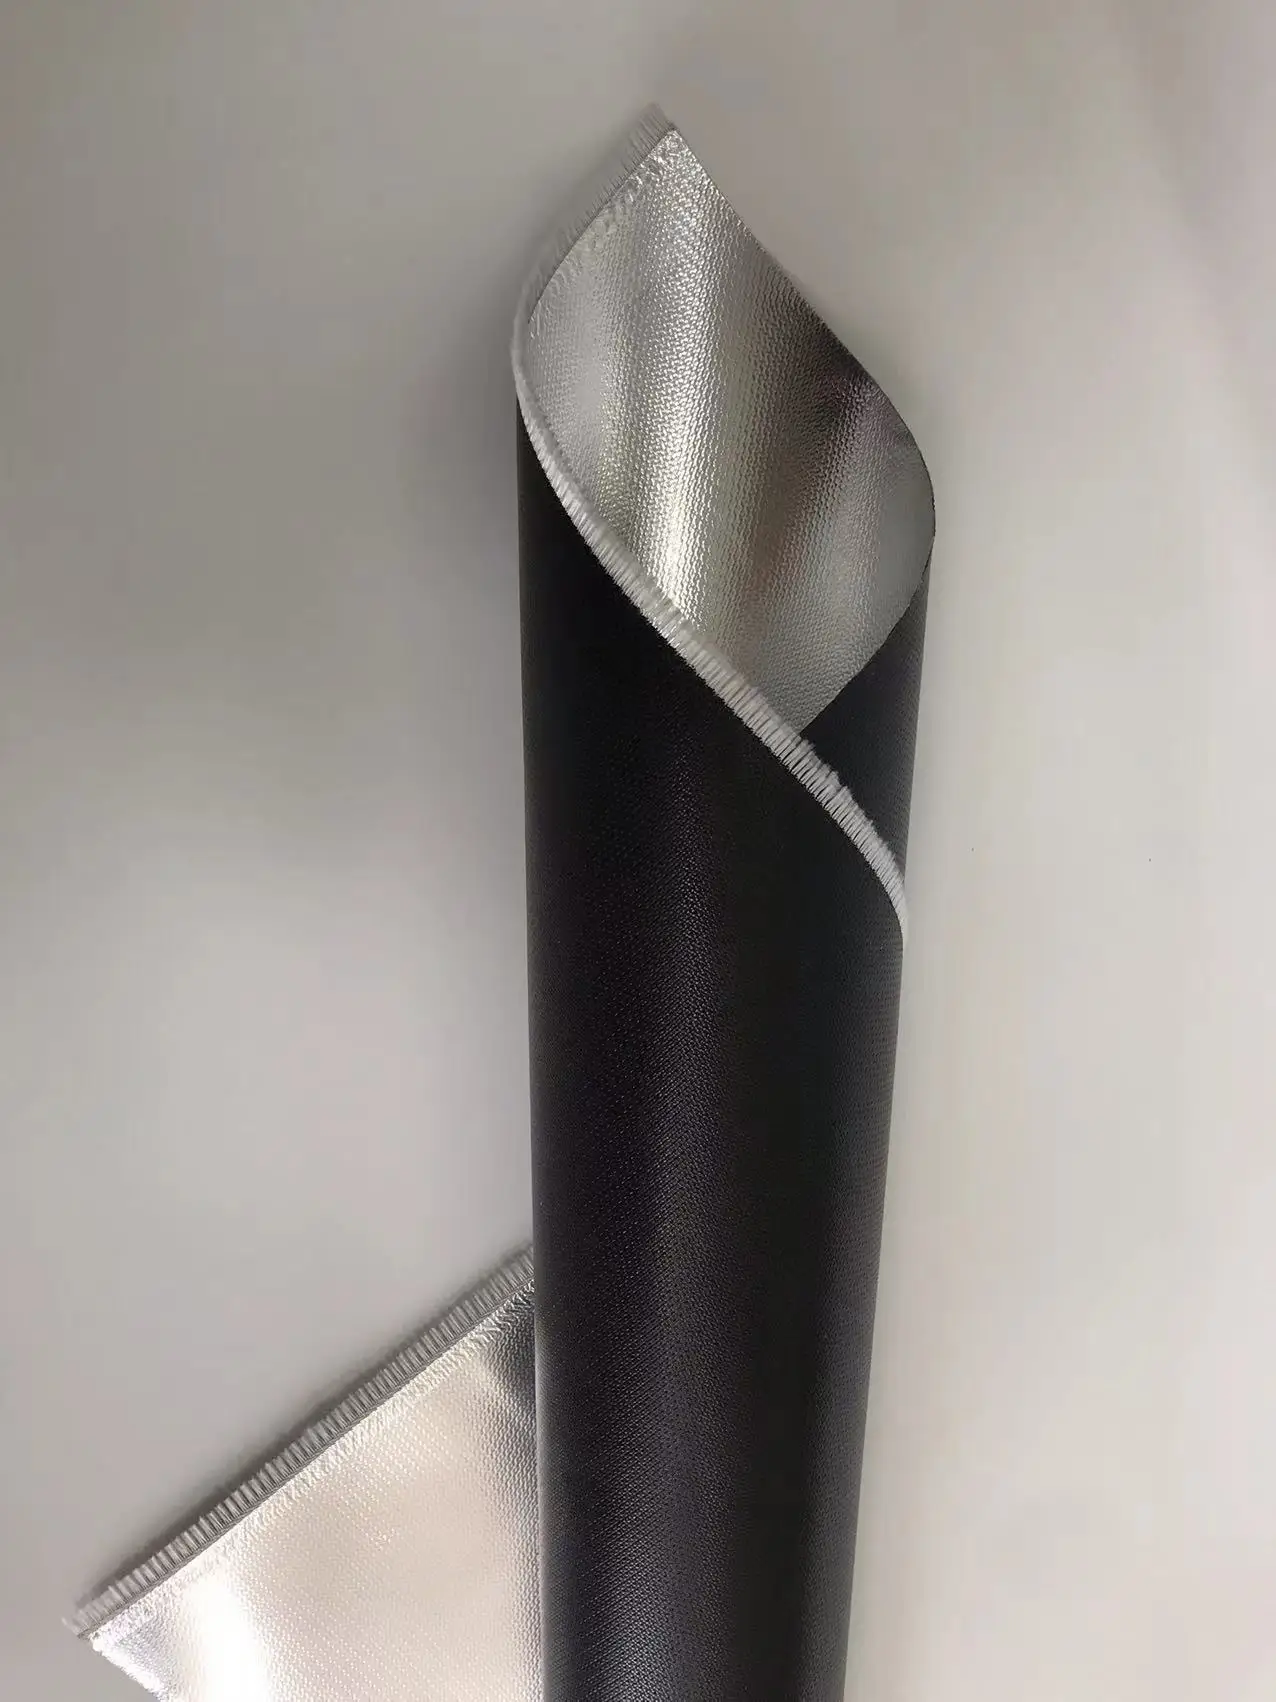 Tissu ignifuge en feuille d'aluminium et silice - Tissu ignifuge